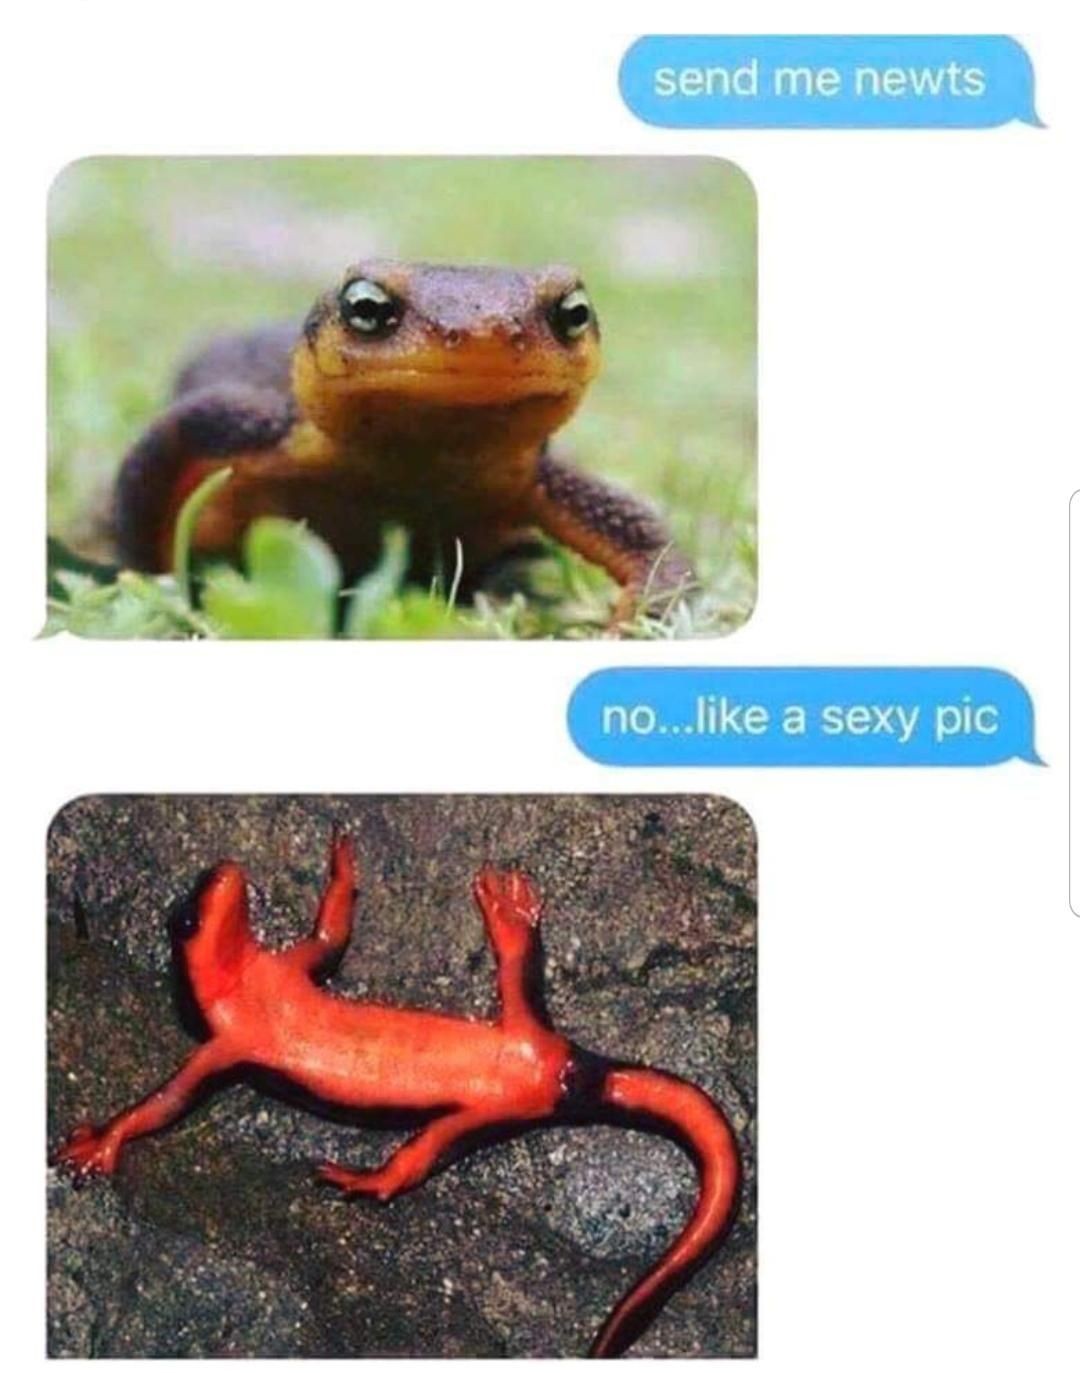 Sexy newts